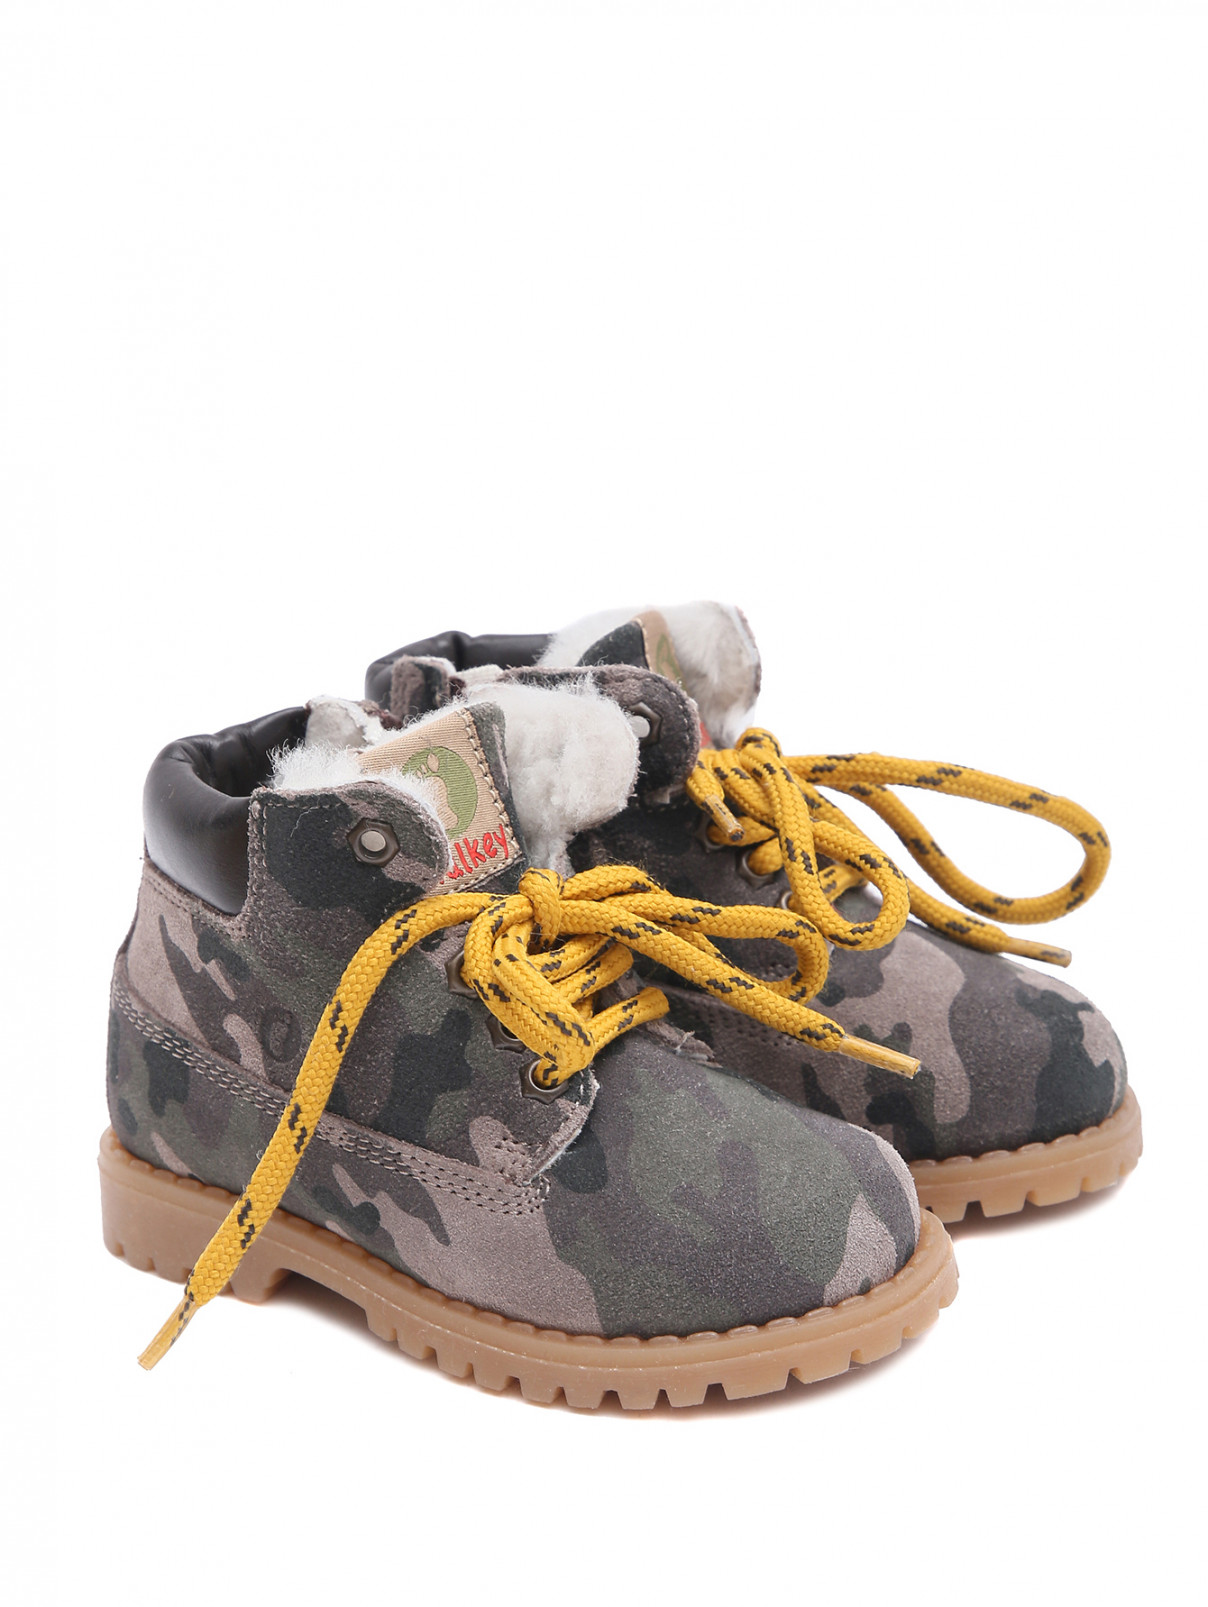 Замшевые ботинки с узором "камуфляж" Walkey  –  Общий вид  – Цвет:  Узор